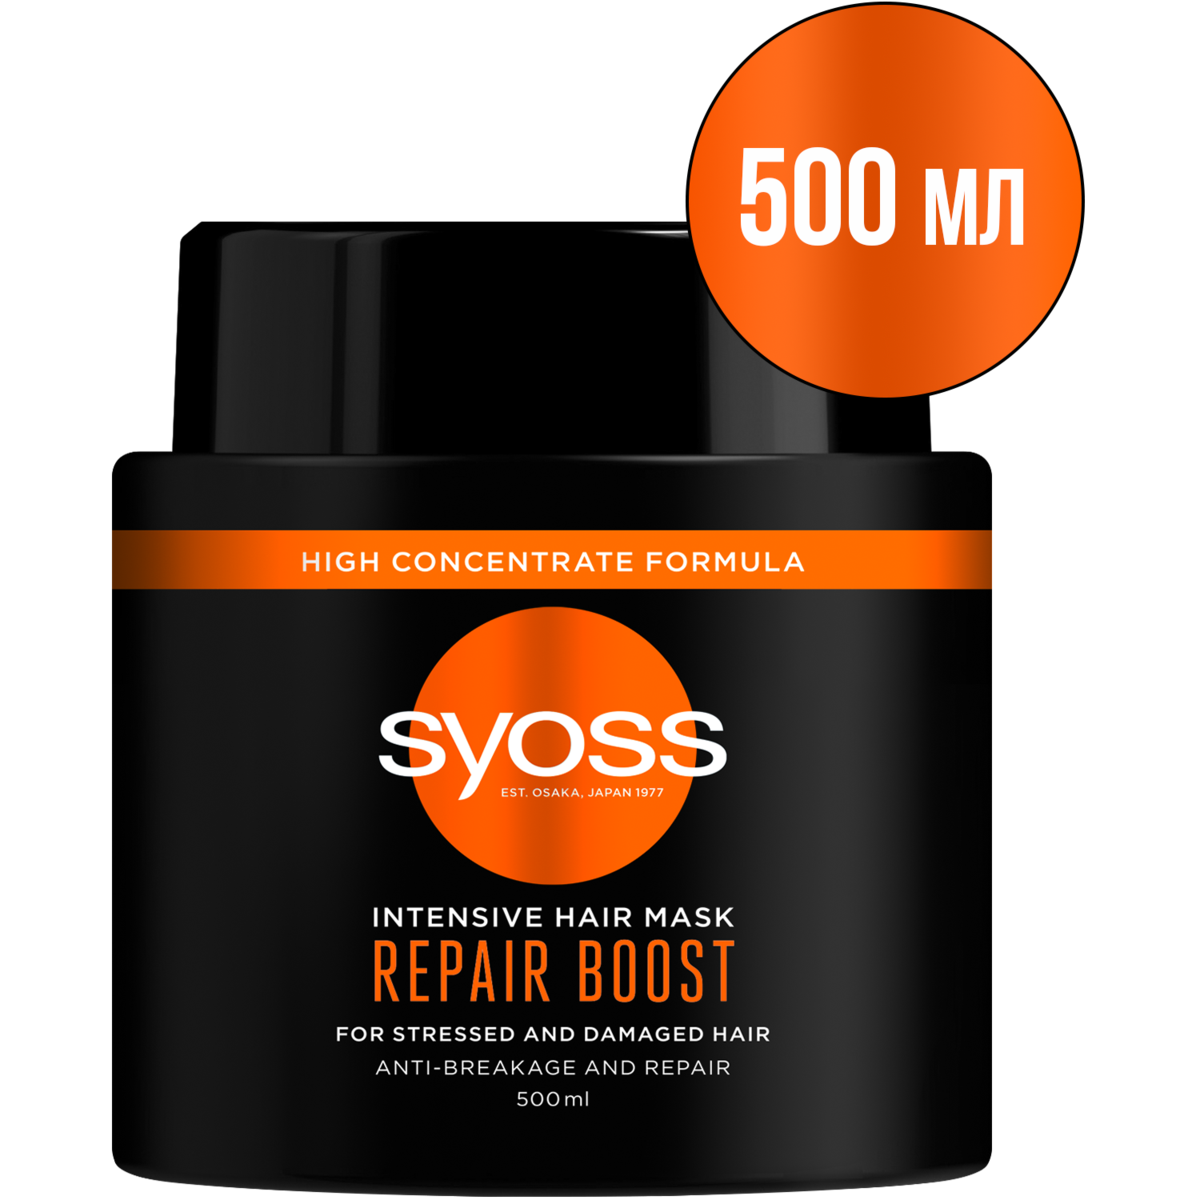 Интенсивная маска для поврежденных волос Syoss Repair Boost, 500 мл - фото 1